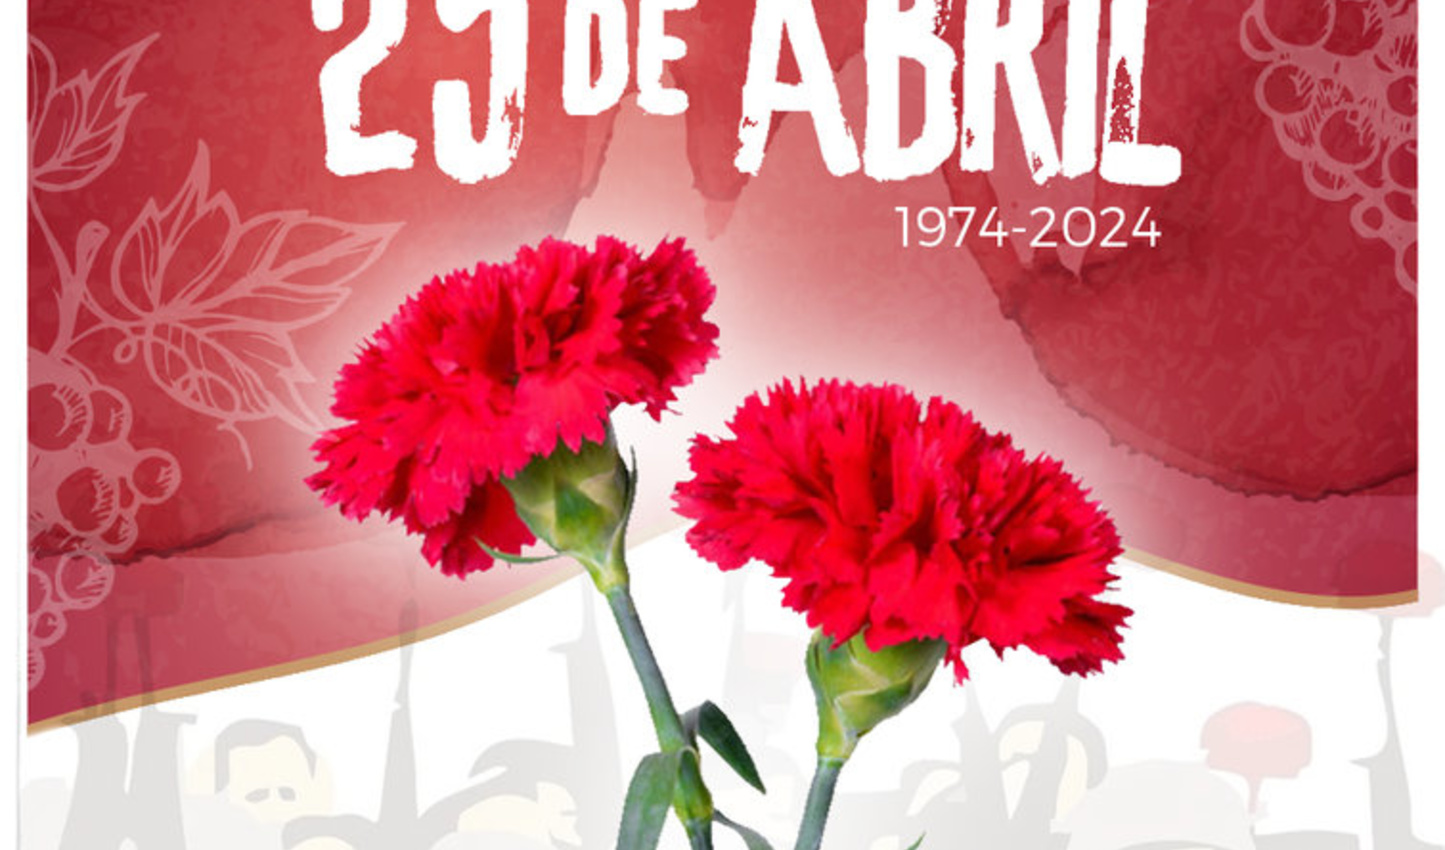 Banda da Covilh  Lana Vinho Comemorativo dos 50 anos de abril 1974-2024